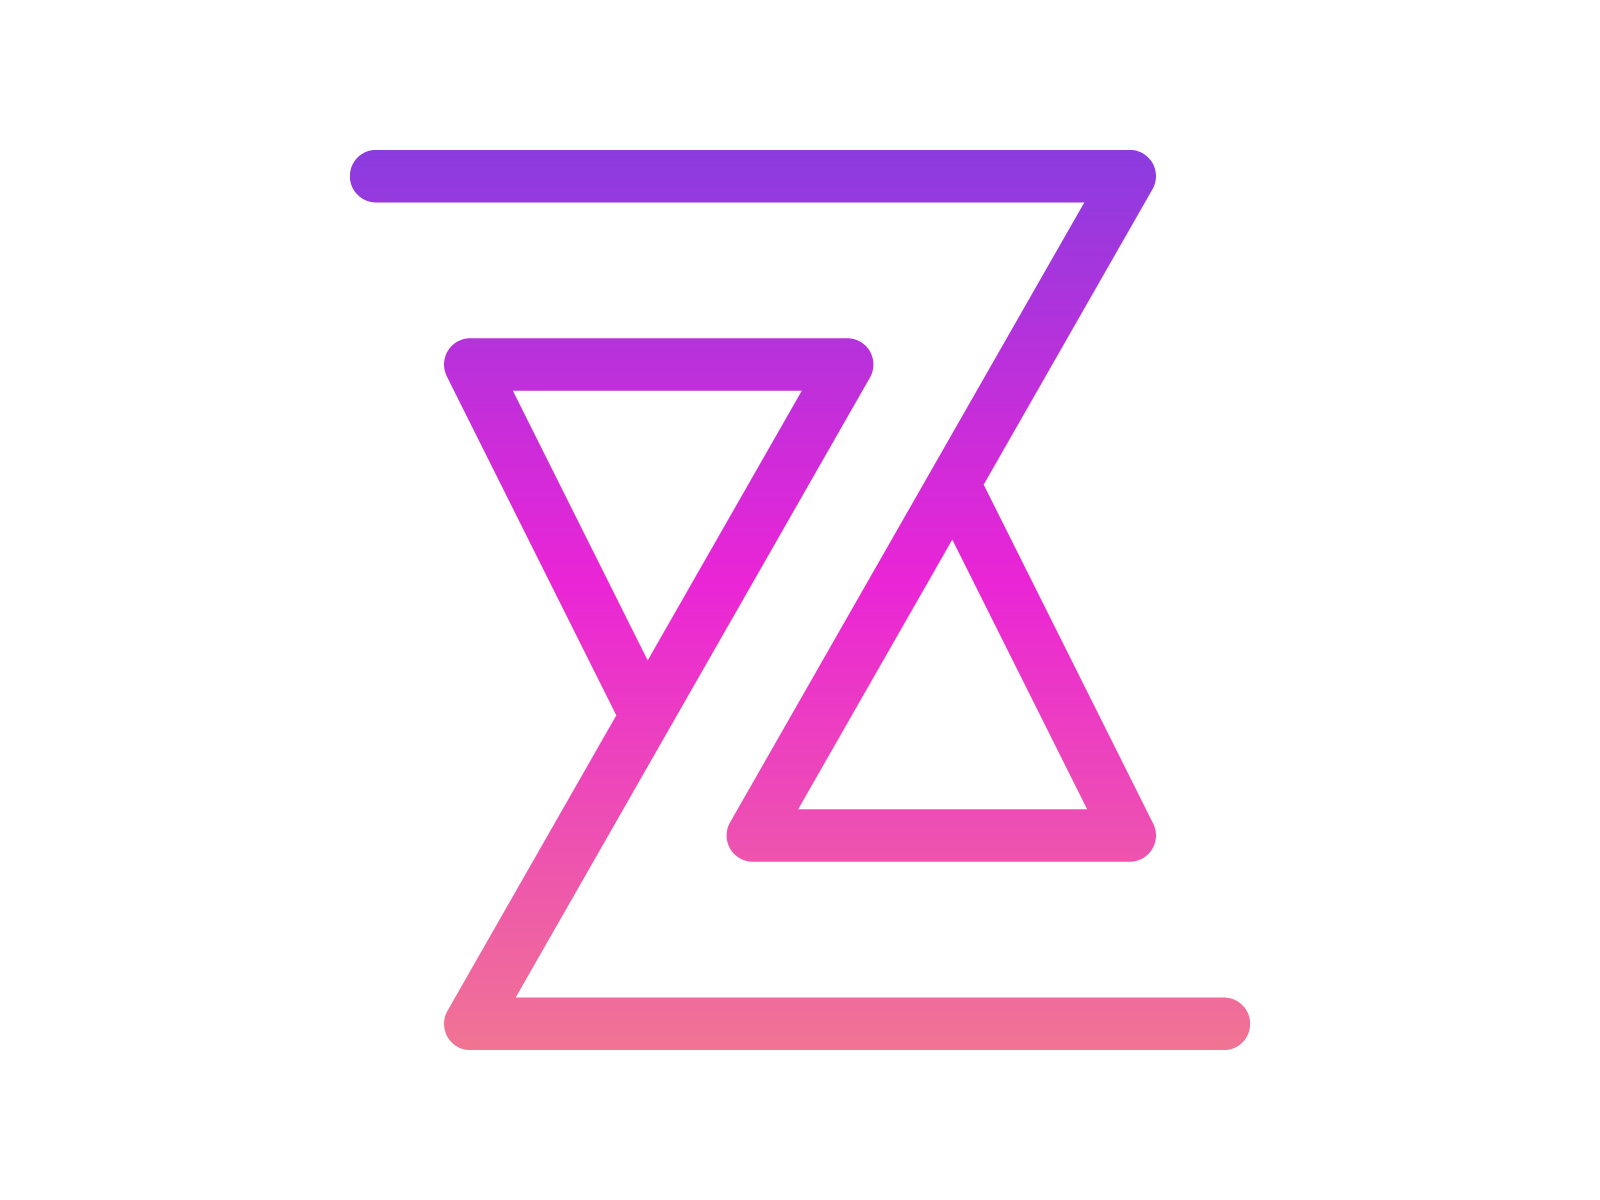 Z logo by Xler8brain on Dribbble